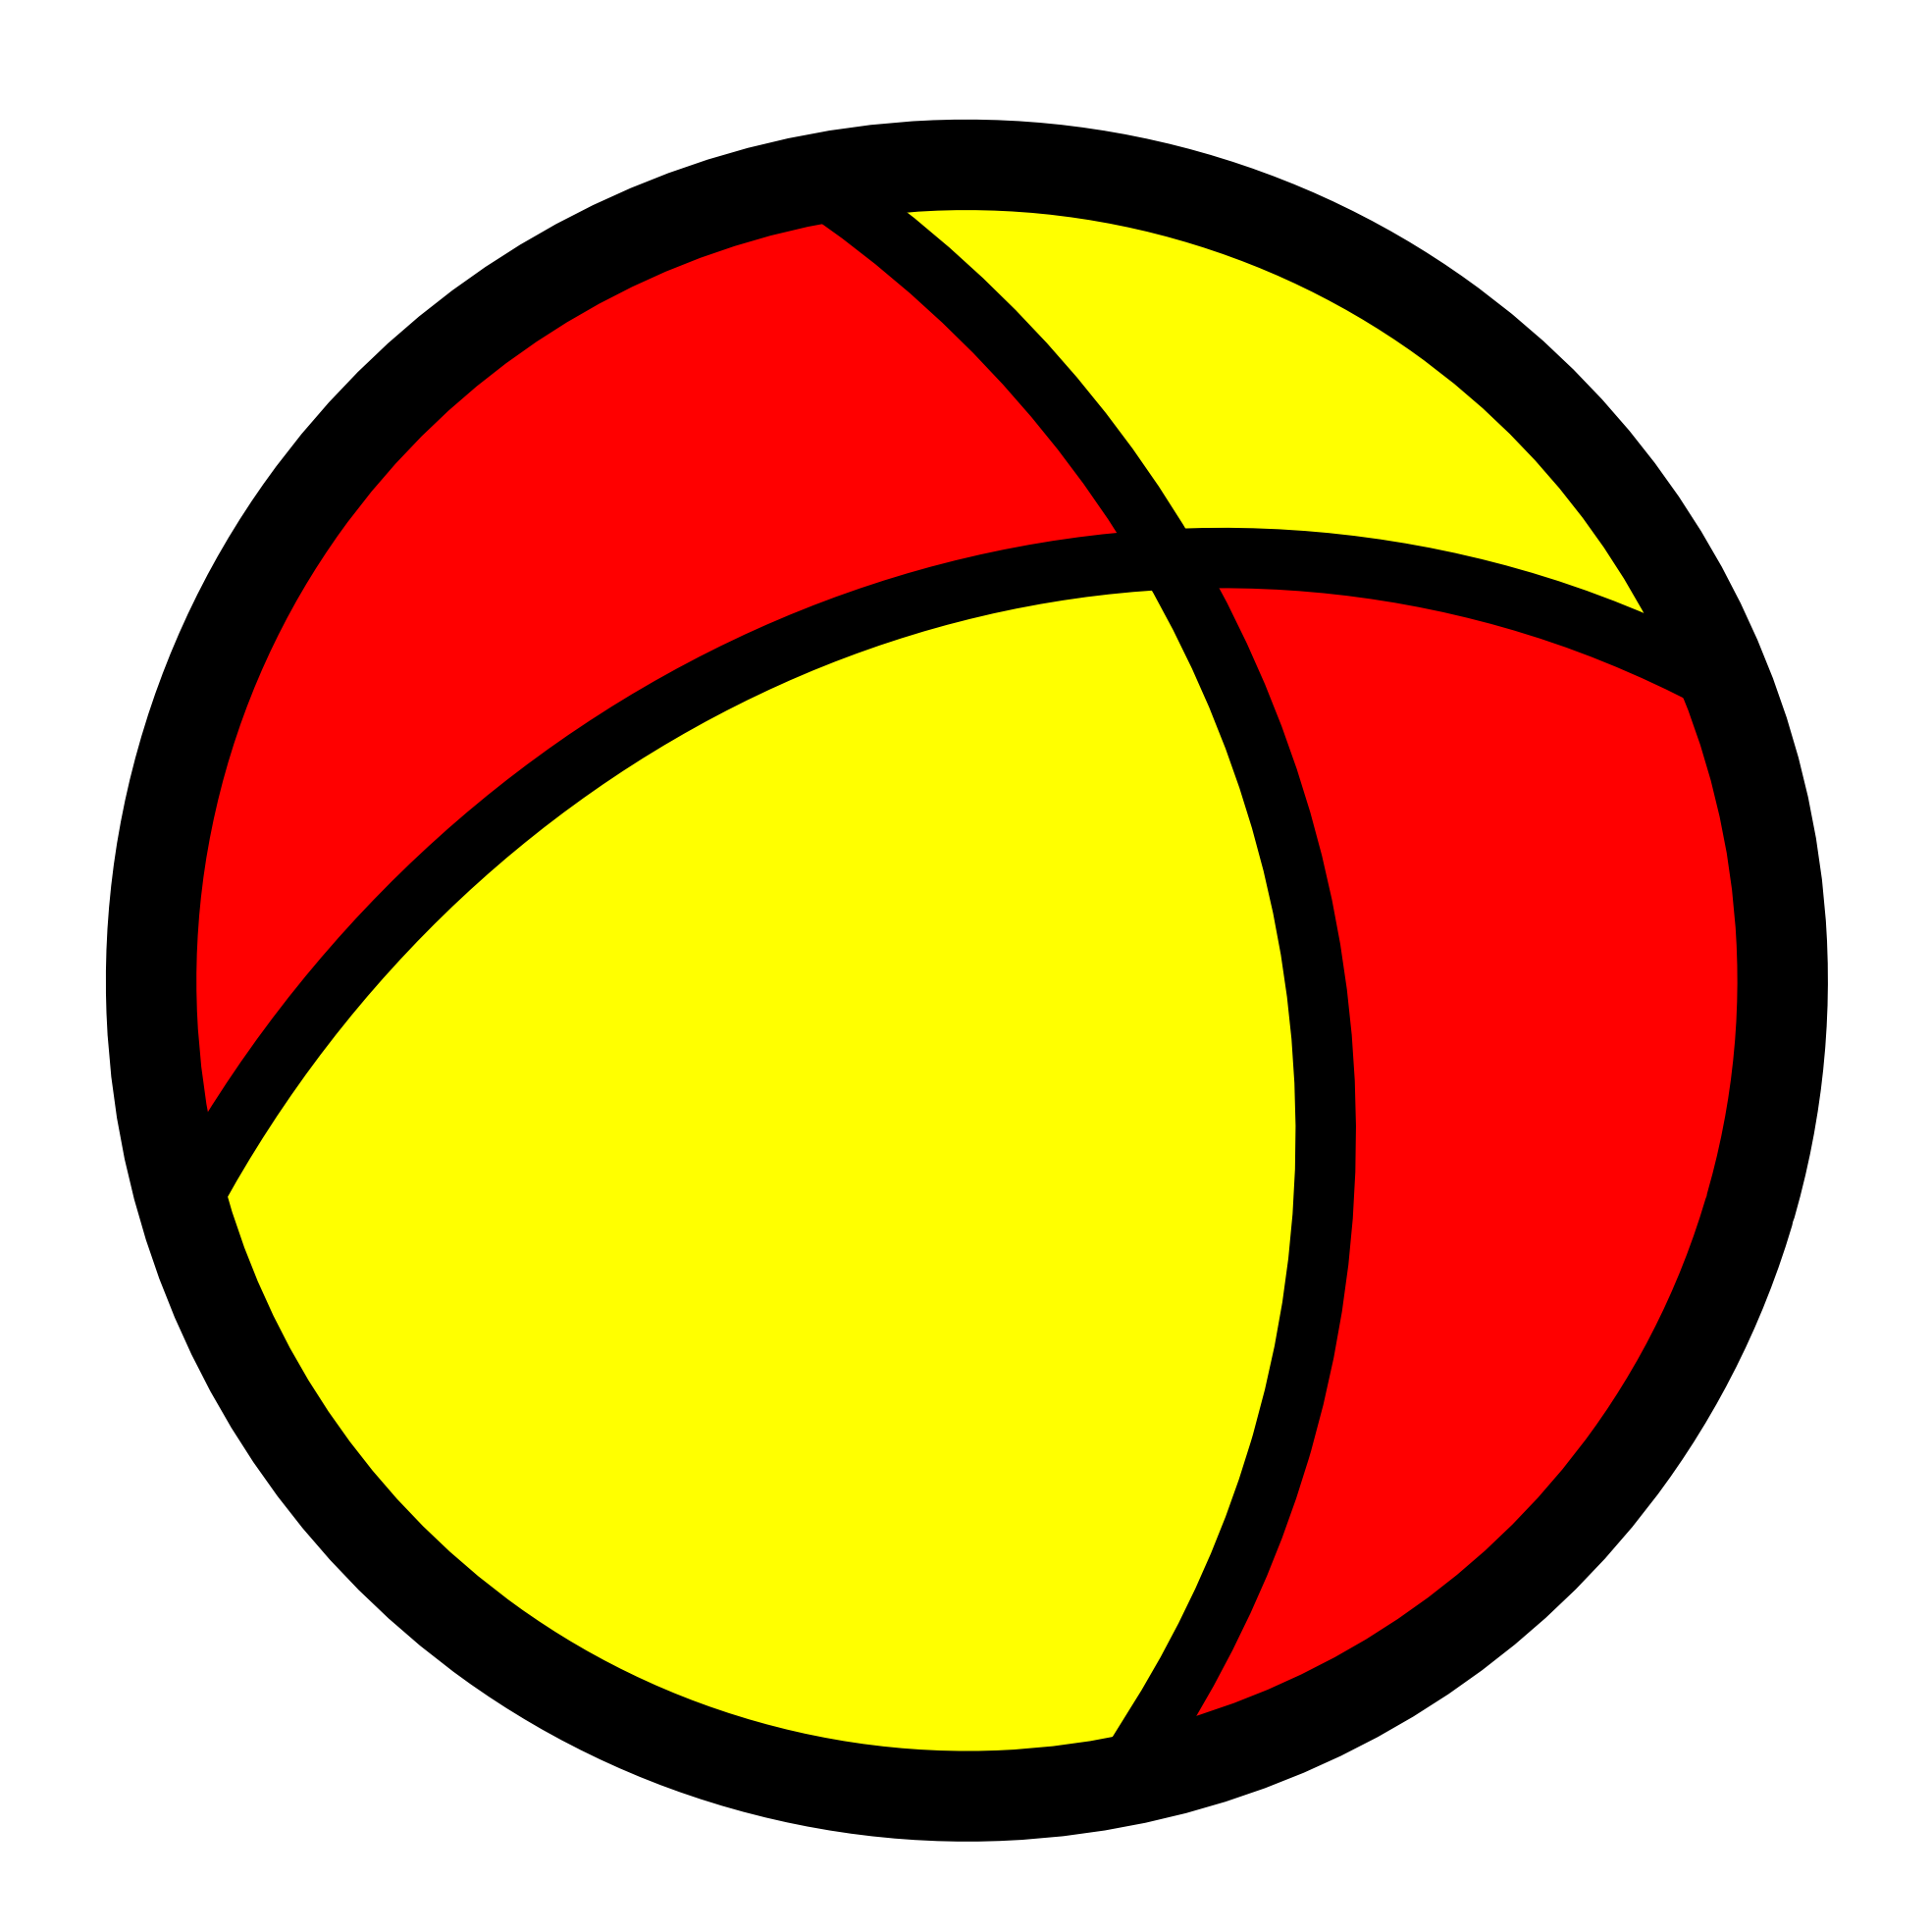 Ball Lineart - ClipArt Best